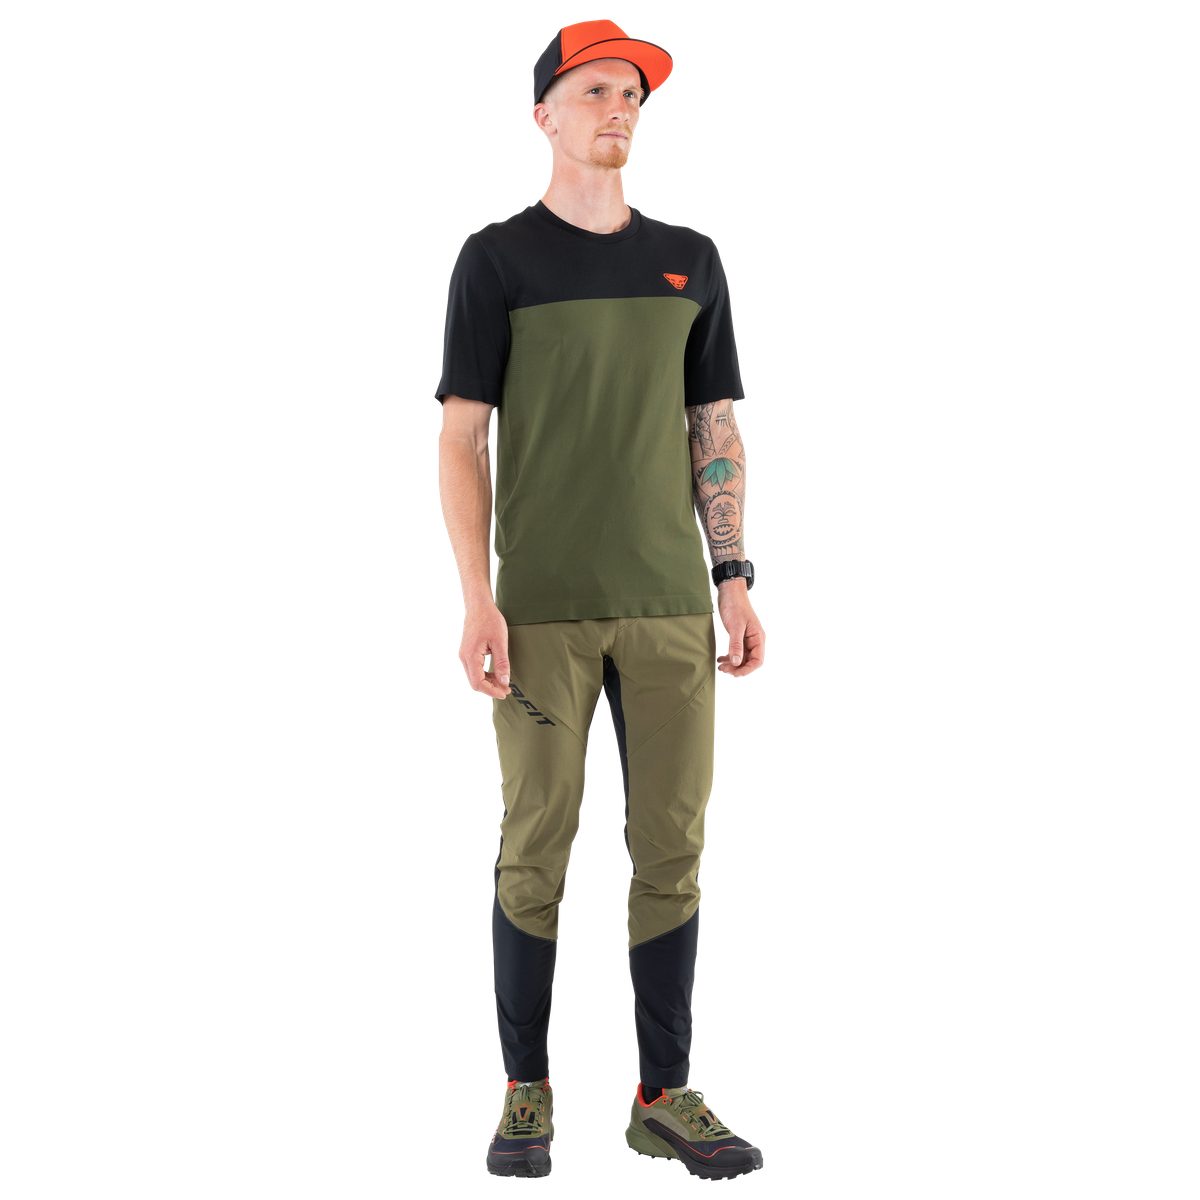 (Herren) Traverse S-Tech Dynafit winter 5891 – Dynafit T-Shirt moss/0910 T-Shirt